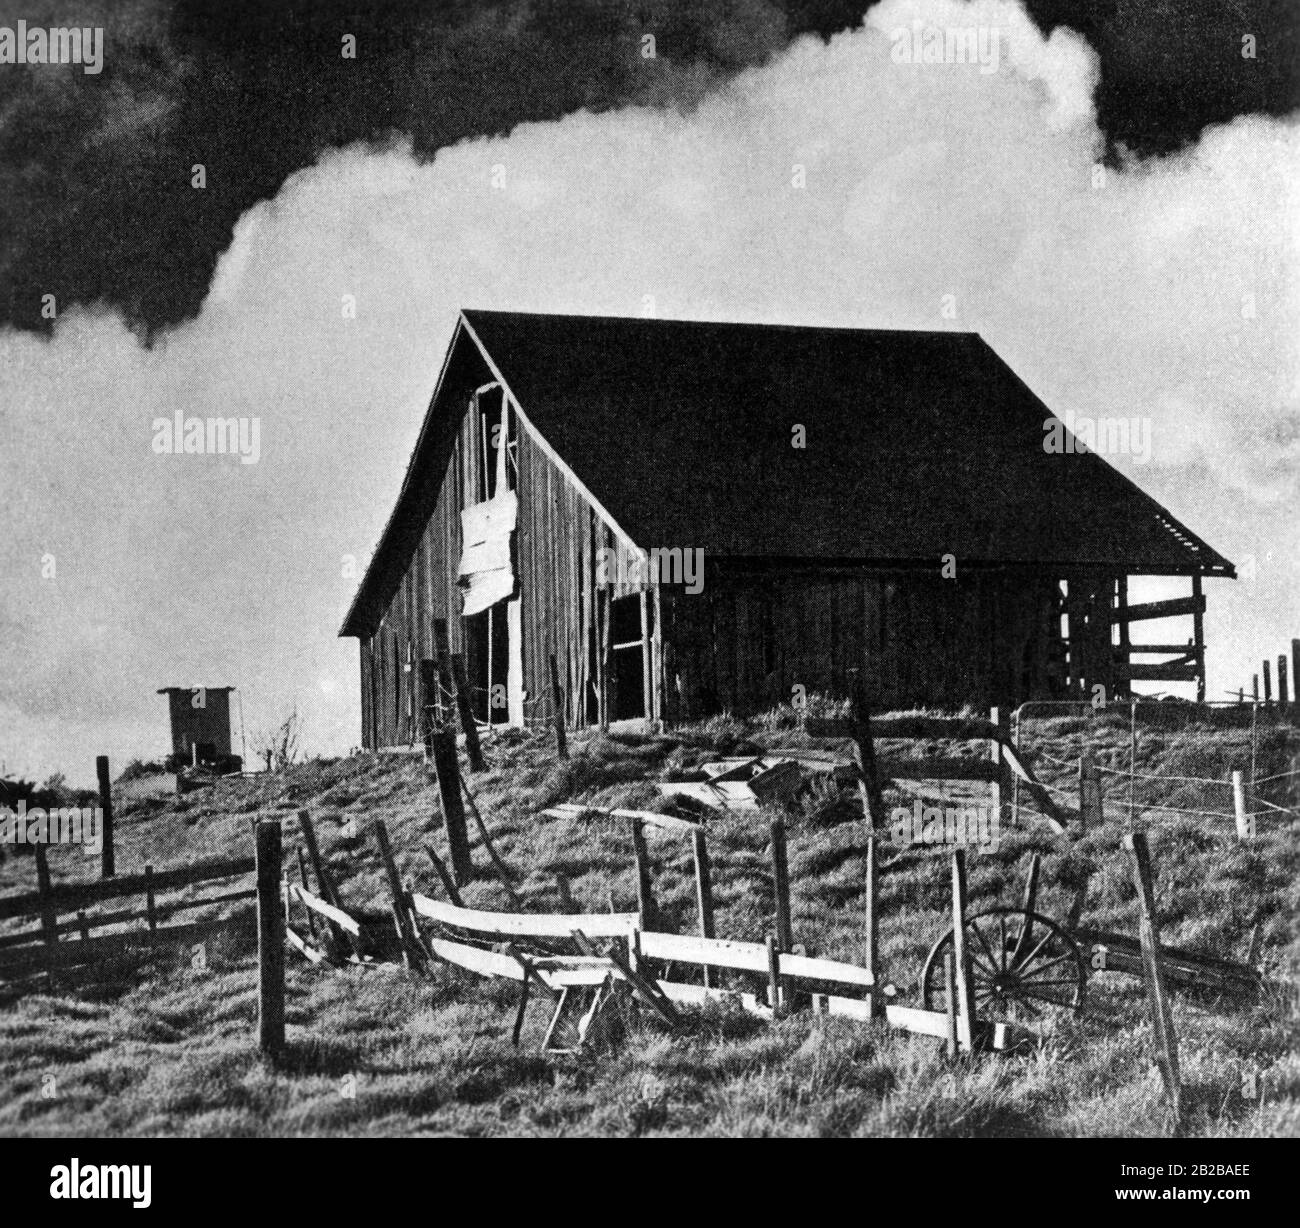 Weltwirtschaftskrise: Ein verlassener Bauernhof in den nördlichen Staaten. Stockfoto